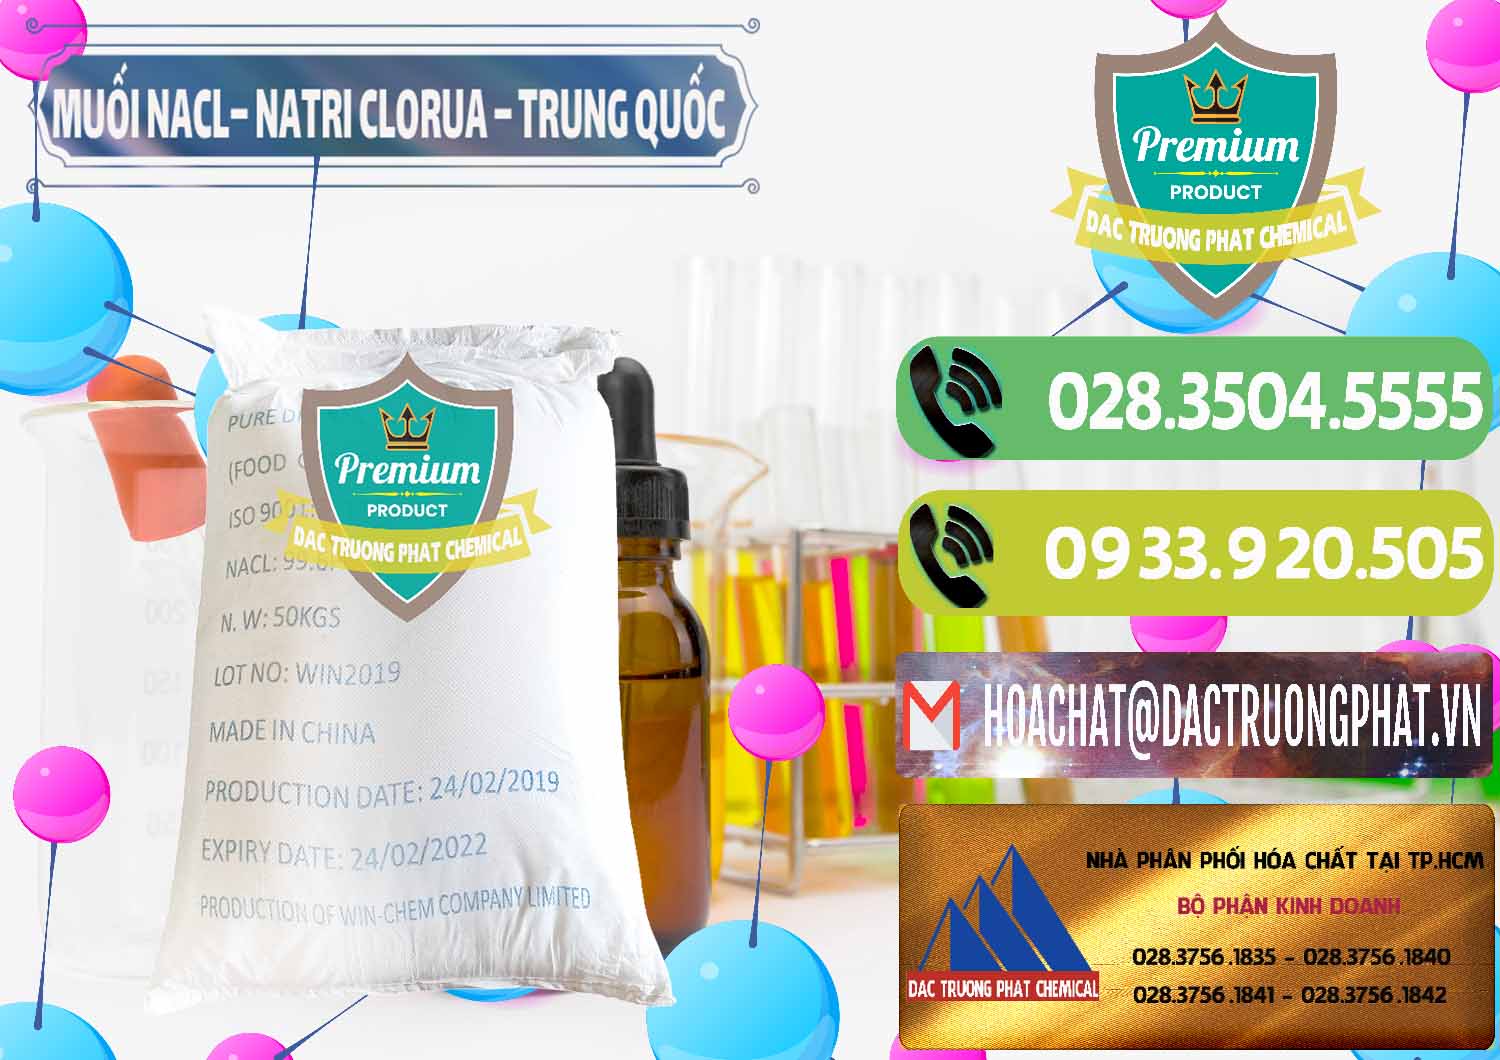 Cty chuyên kinh doanh - bán Muối NaCL – Sodium Chloride Trung Quốc China - 0097 - Chuyên phân phối - bán hóa chất tại TP.HCM - hoachatmientay.vn